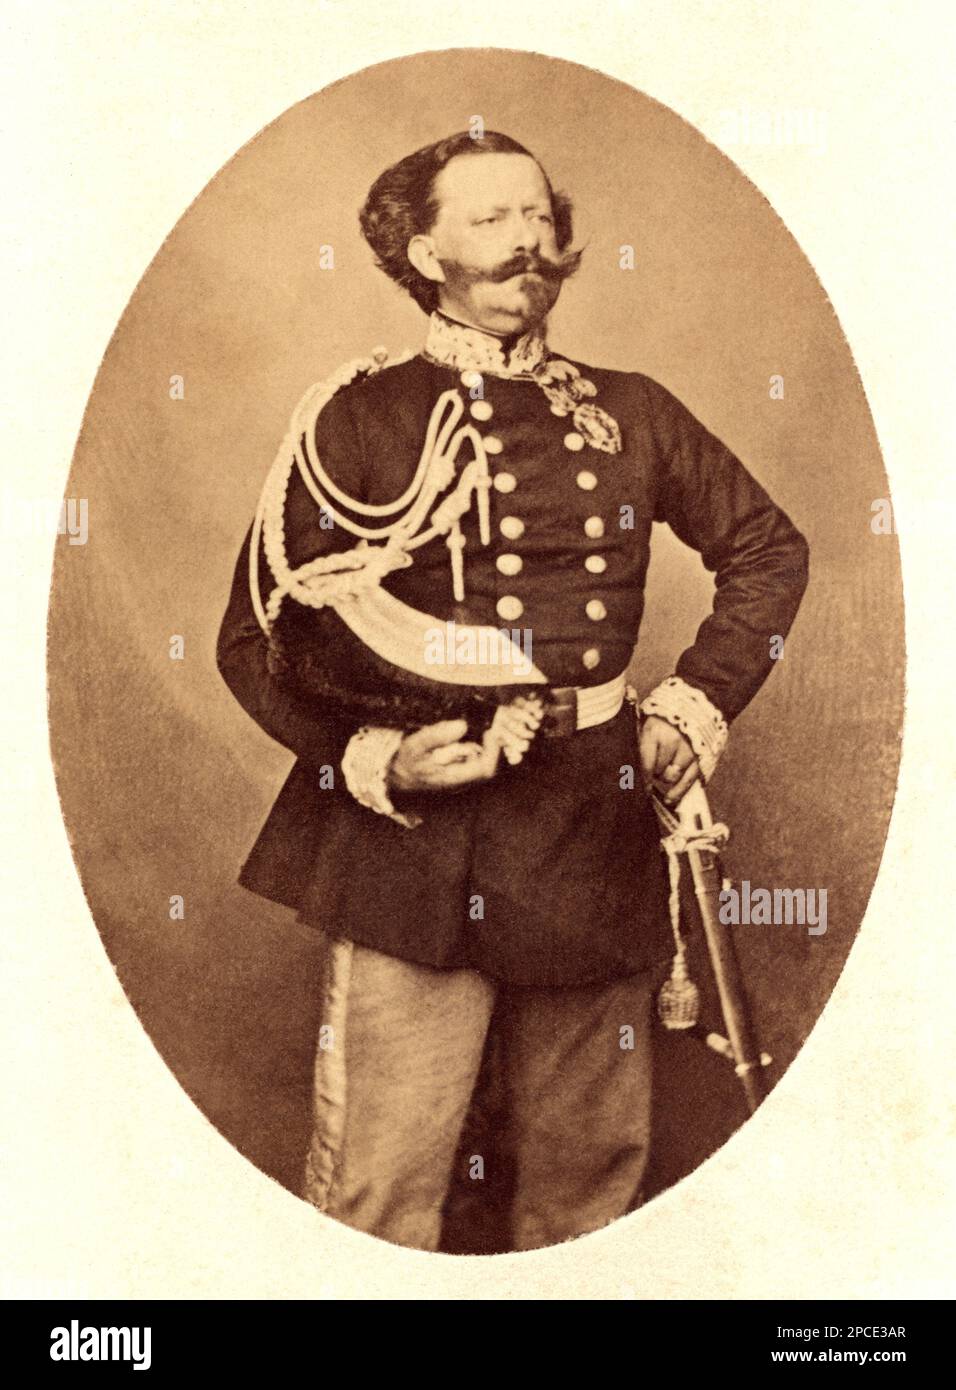 1870 ca, Italia : il Re italiano VITTORIO EMANUELE II di SAVOIA ( 1820 - 1888 ). Foto di DISDERI e C. , Parigi - Italia - CASA SAVOIA - REALI - Nobiltà ITALIANA - SAVOY - NOBILTÀ - ROYALTY - STORIA - FOTO STORICHE - royalty - nobili - Nobiltà - ritratto - ritratto - baffi - baffi - mustache - divisa militare - divisa uniforme militare - ITALIA ---- Archivio GBB Foto Stock